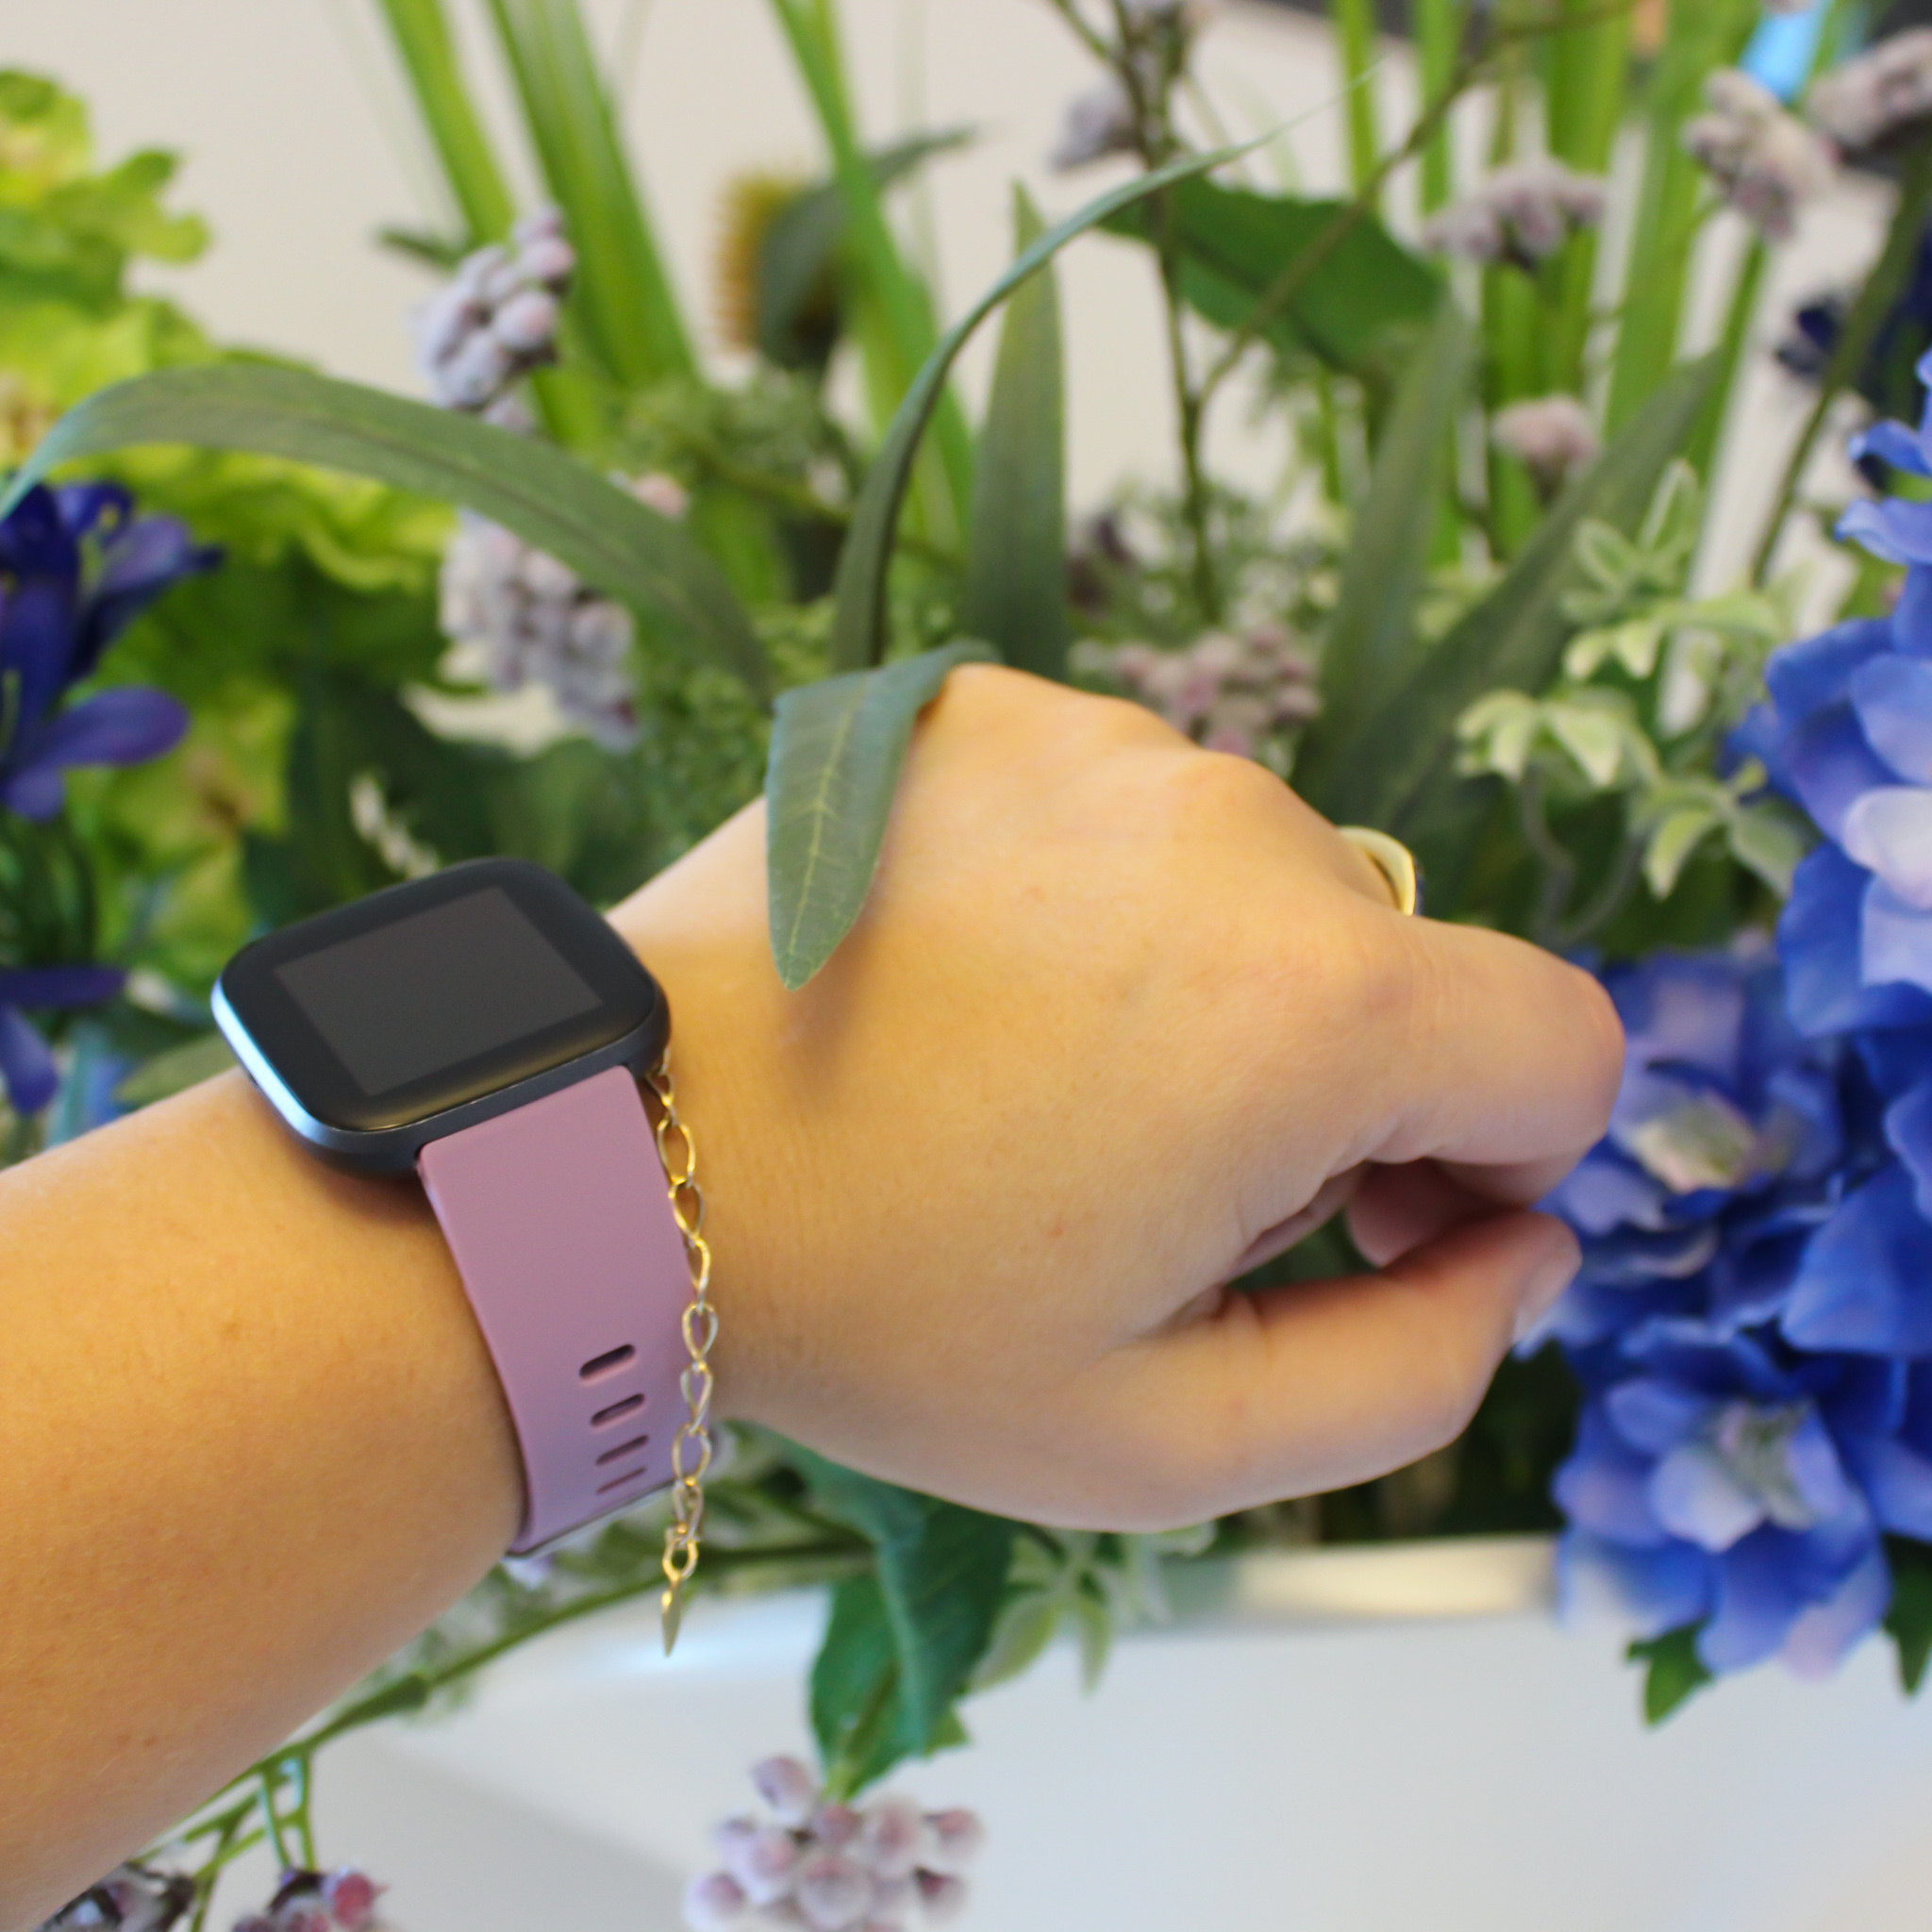 Fitbit Versa sport szalag - világos lila